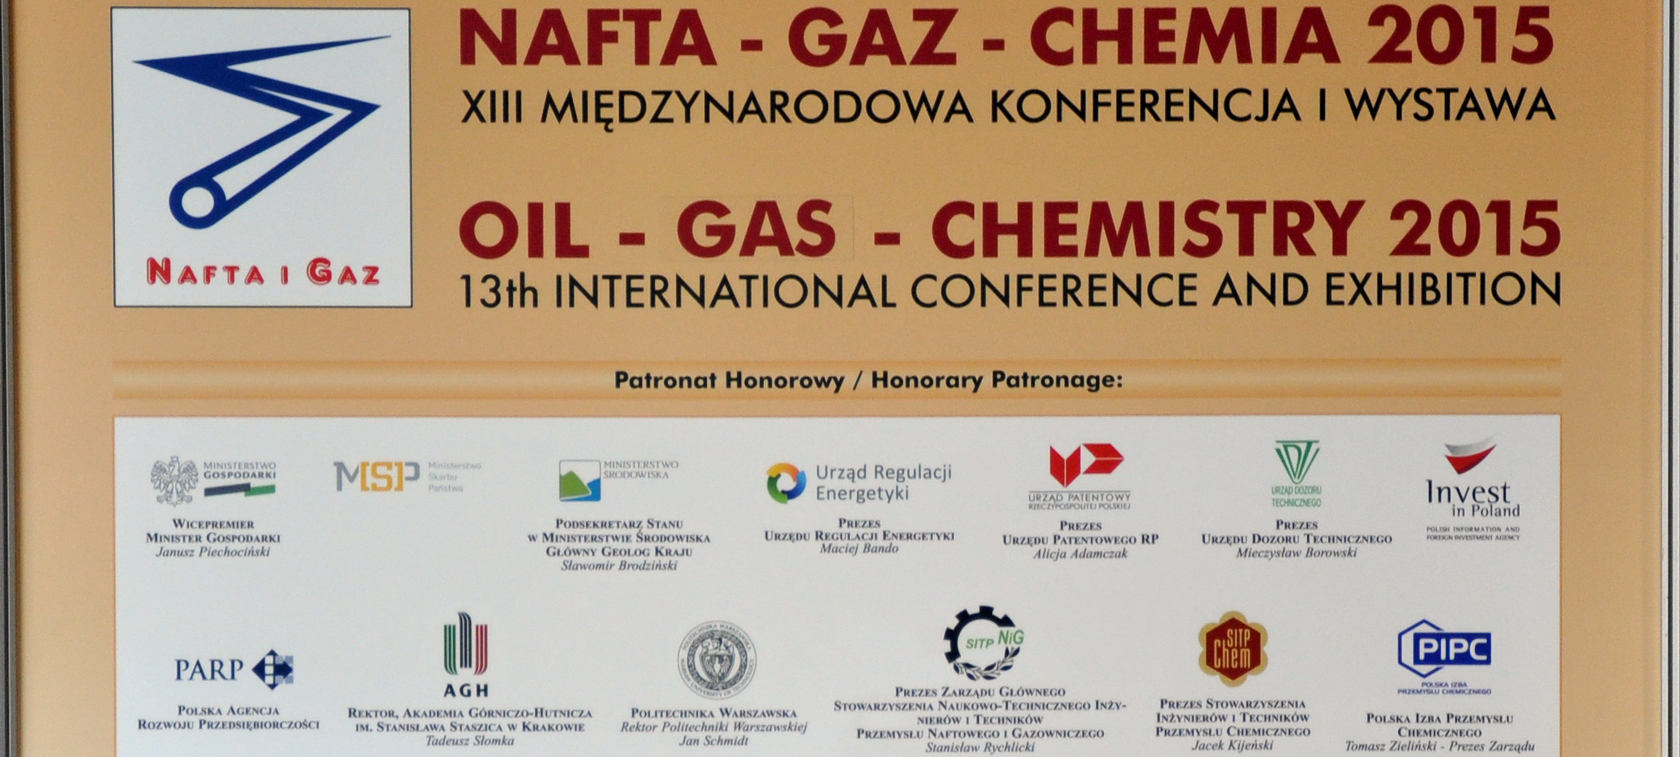 Nafta-Gaz-Chemia 2015 - rynek się otwiera